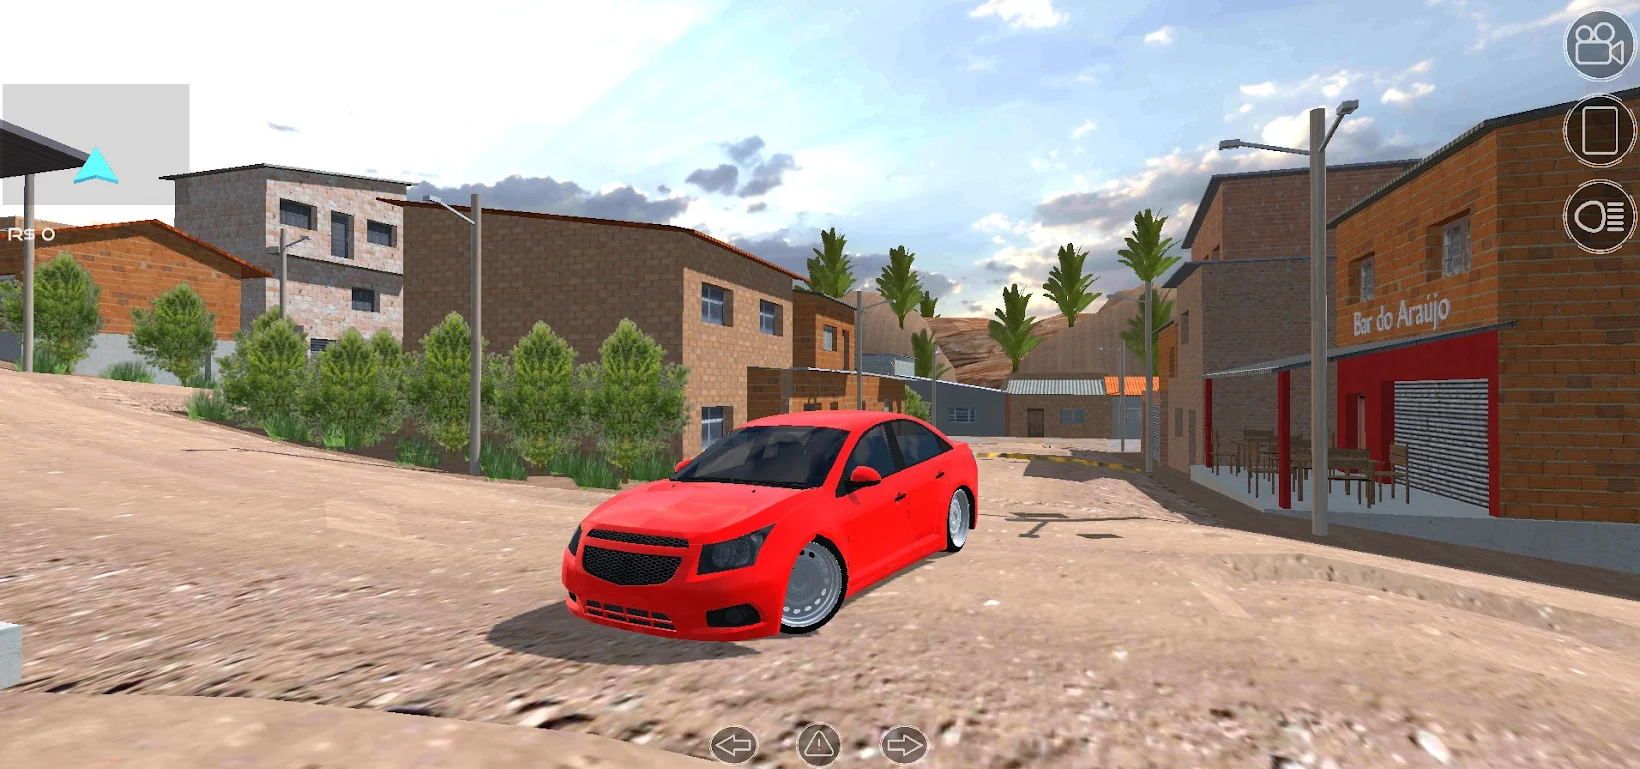 巴西城市模拟驾驶游戏 截图3